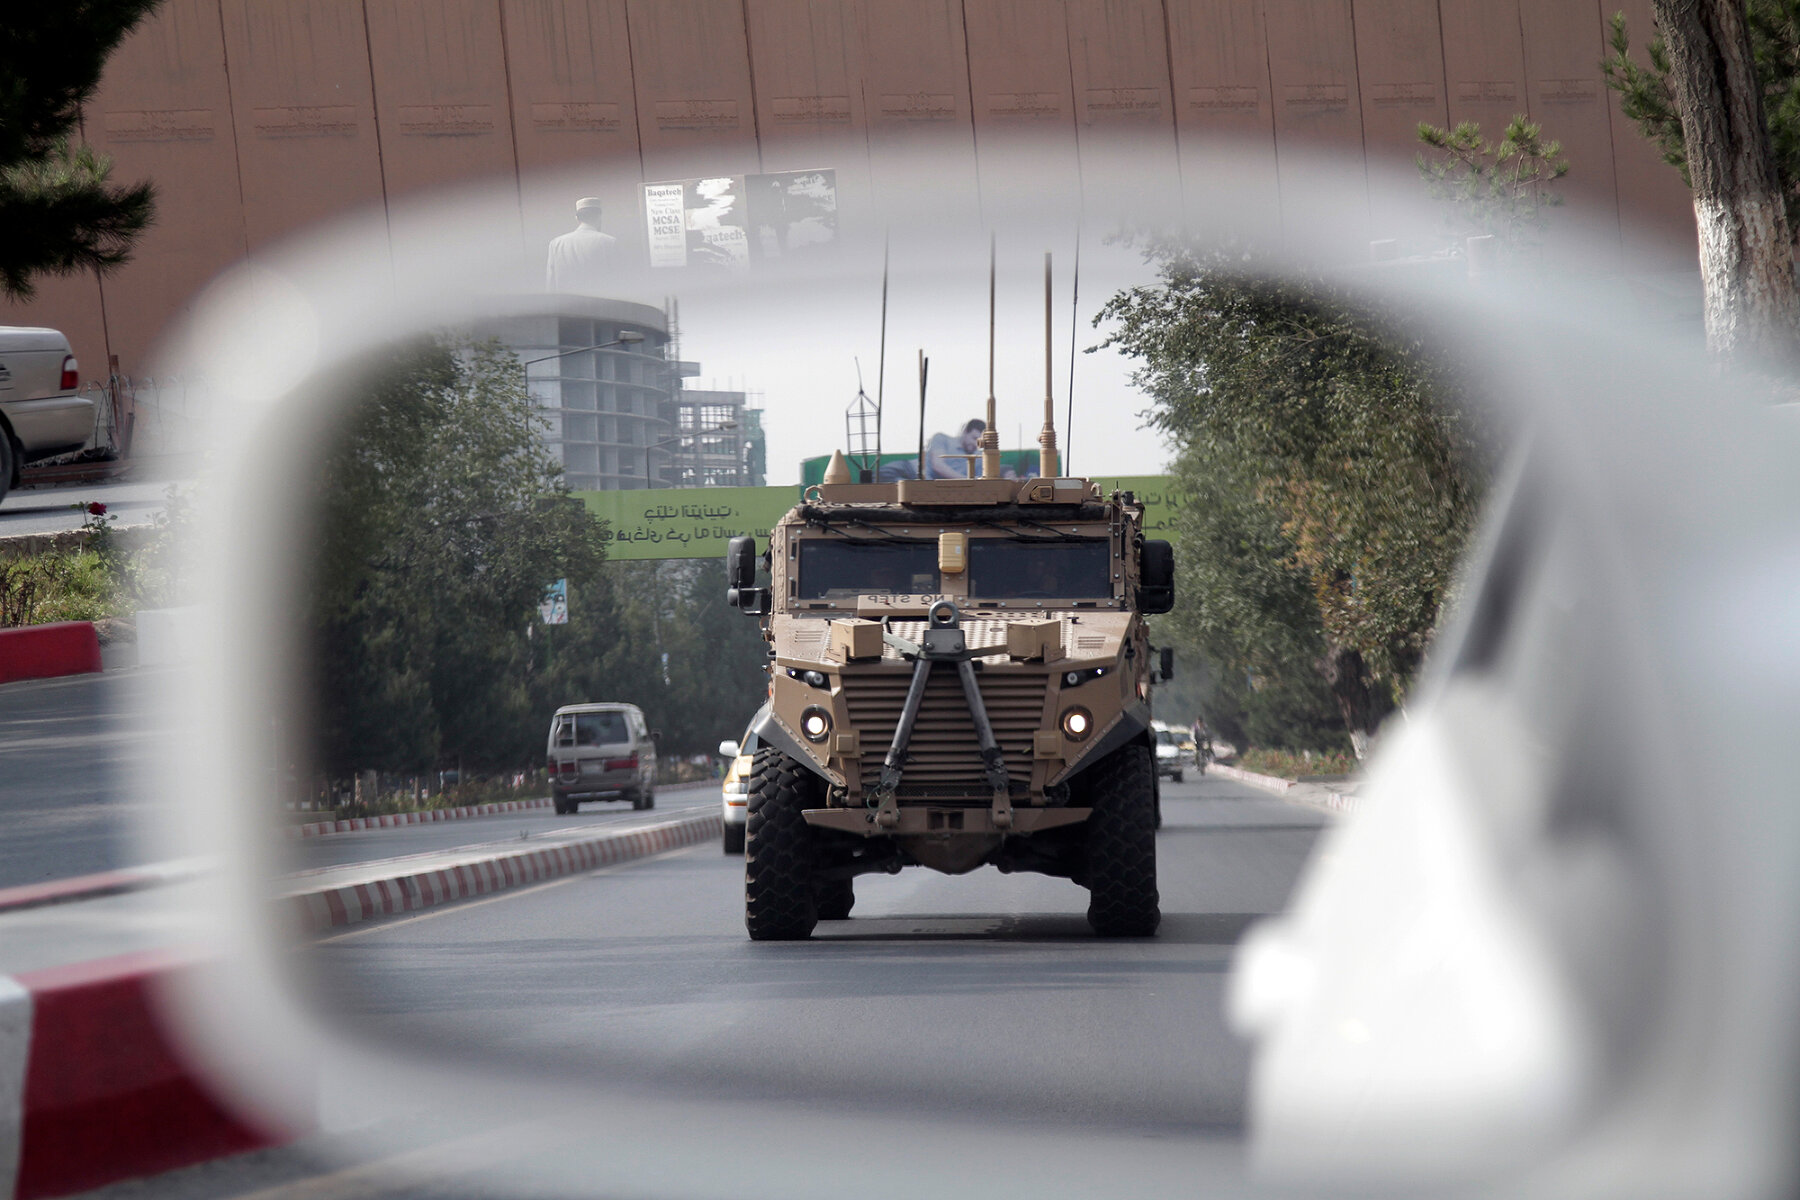 <p>Патрульная машина армии США в центре Кабула отражается в зеркале заднего вида гражданского автомобиля, 23 августа 2017 года</p>